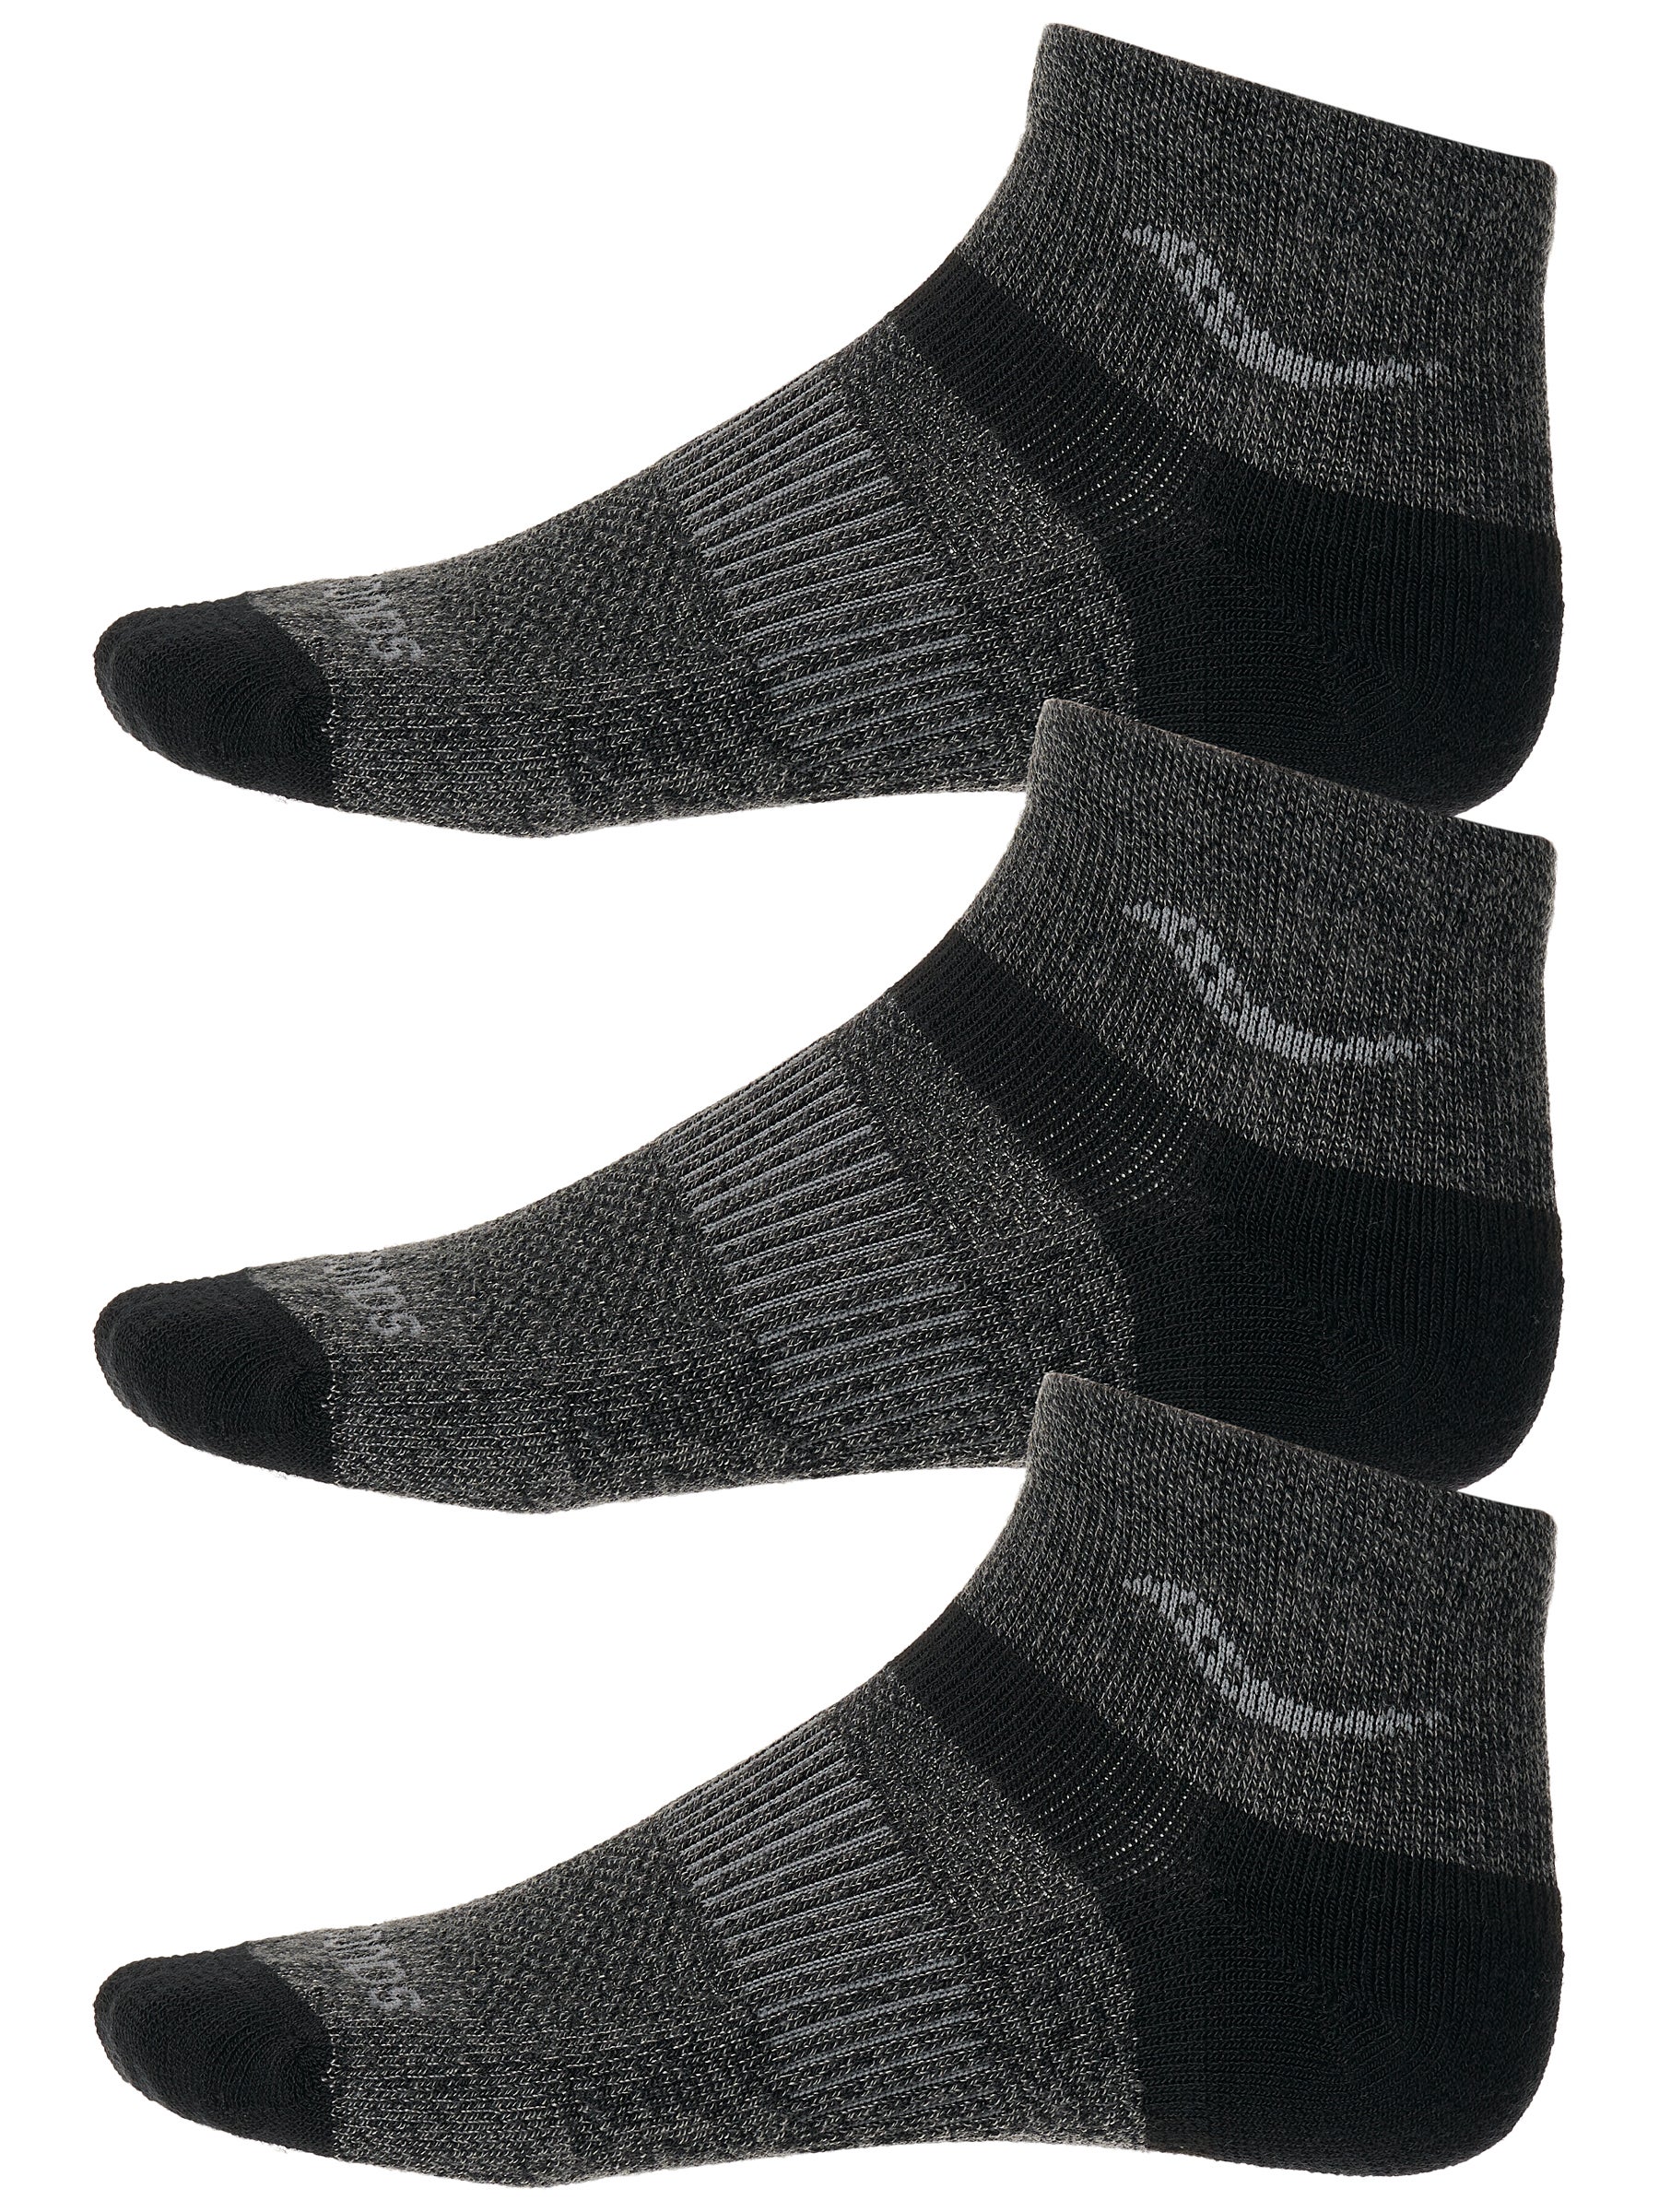 70% Merino Wool Quarter Socks 6 pairs 